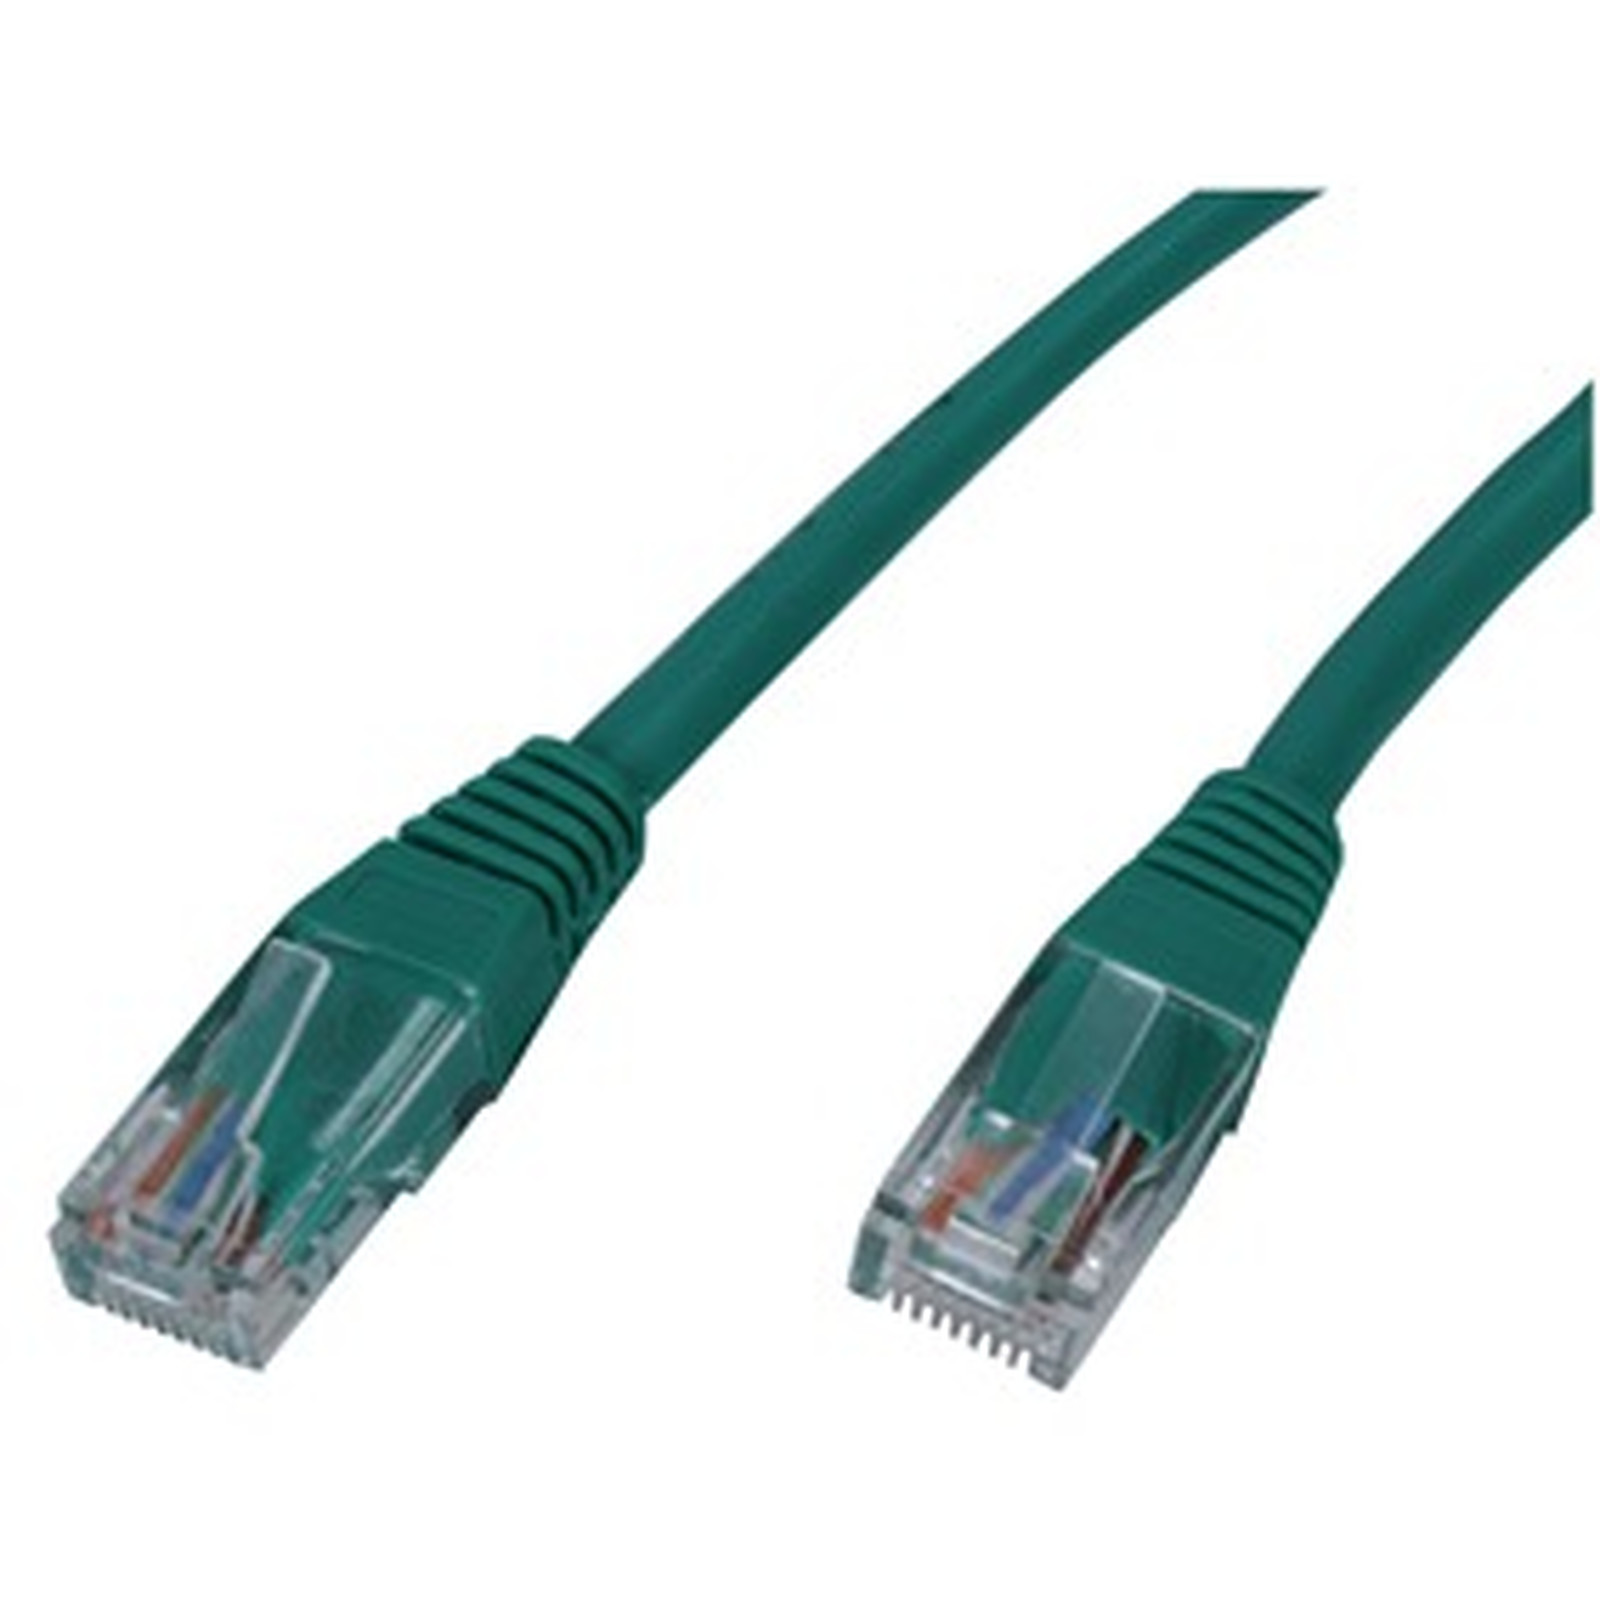 Cable RJ45 categorie 5e U/UTP 0.15 m (Vert) - Cable RJ45 Generique